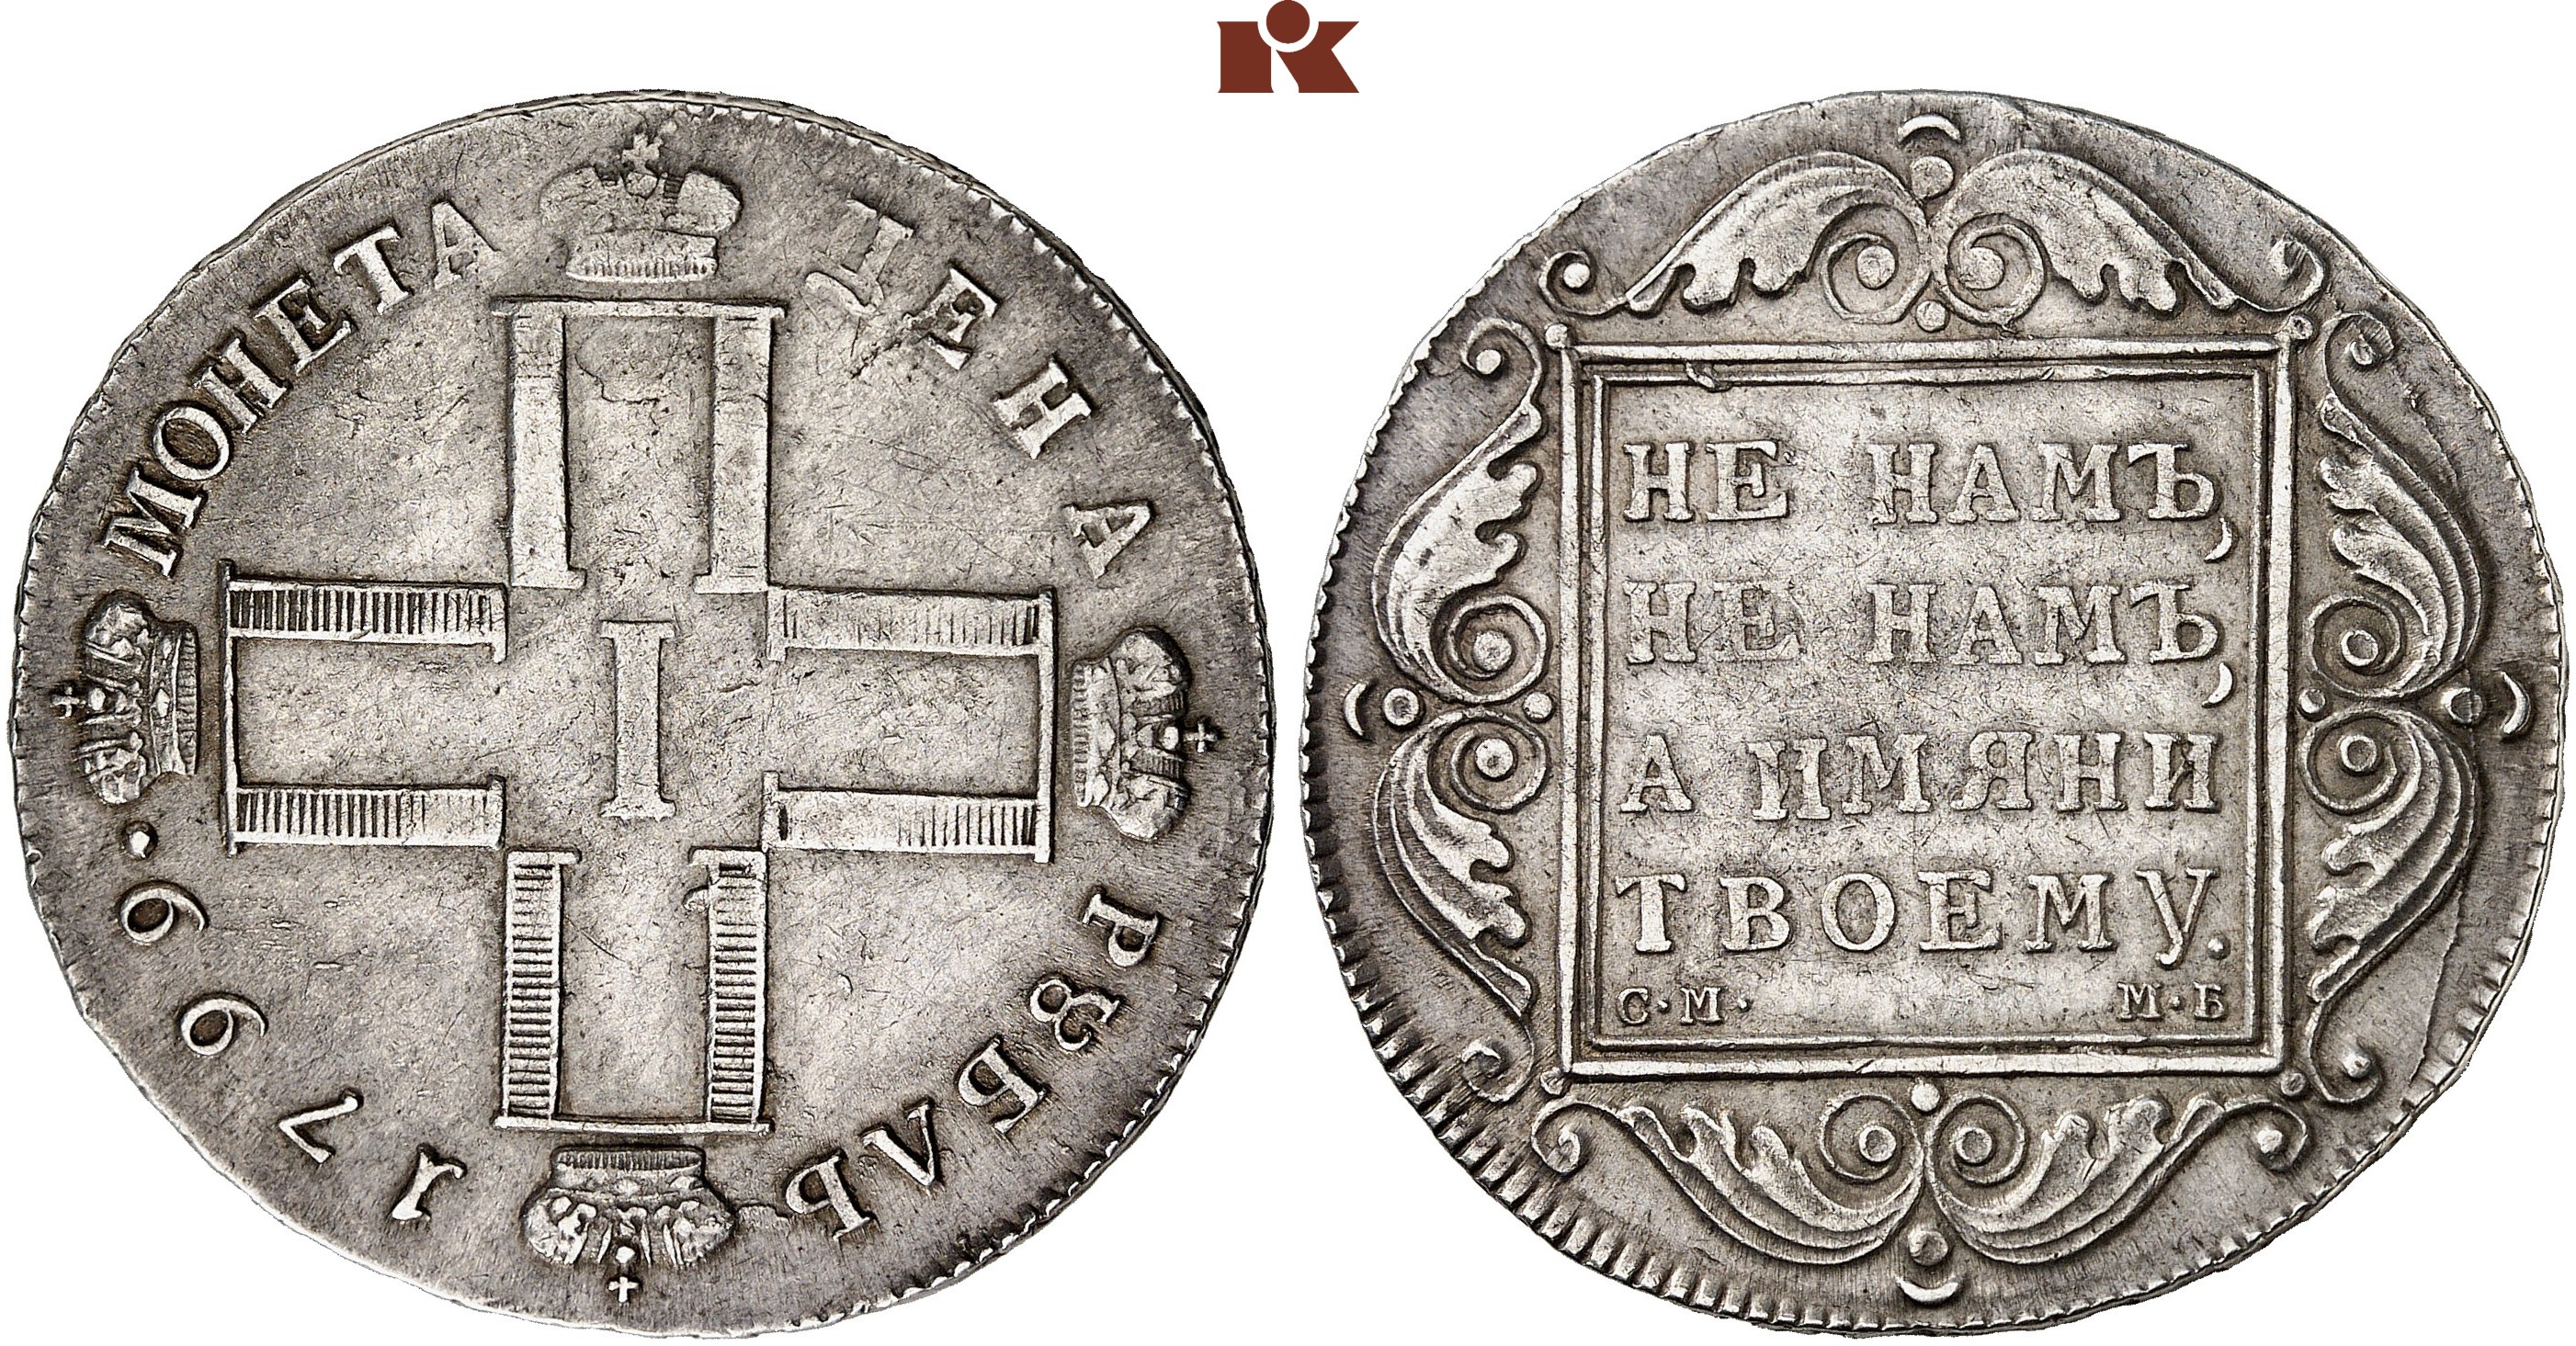 1 от 1800. Полуполтинник Анны Иоанновны. Монеты Петра первого 1800 года.